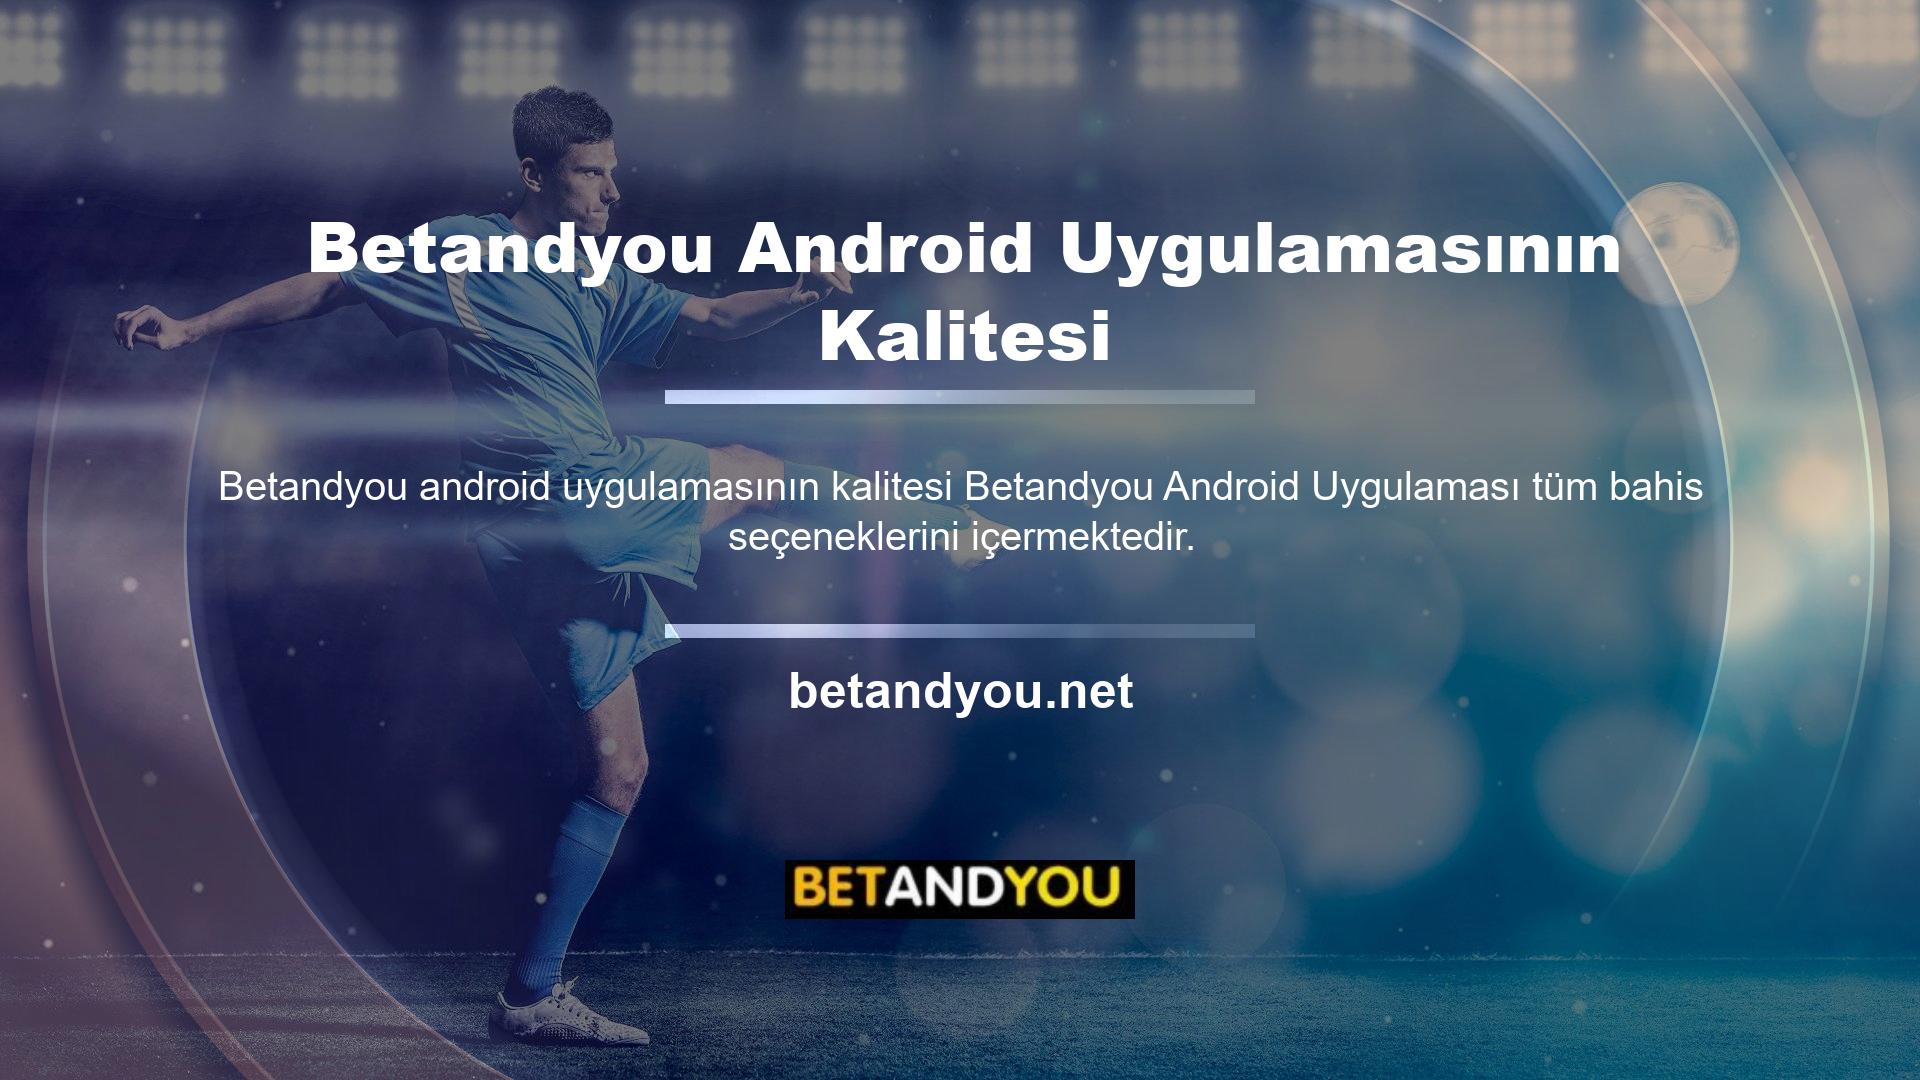 Betandyou Android uygulamasının kalitesi onu spor bahisleri için tercih edilen Android uygulaması haline getiriyor